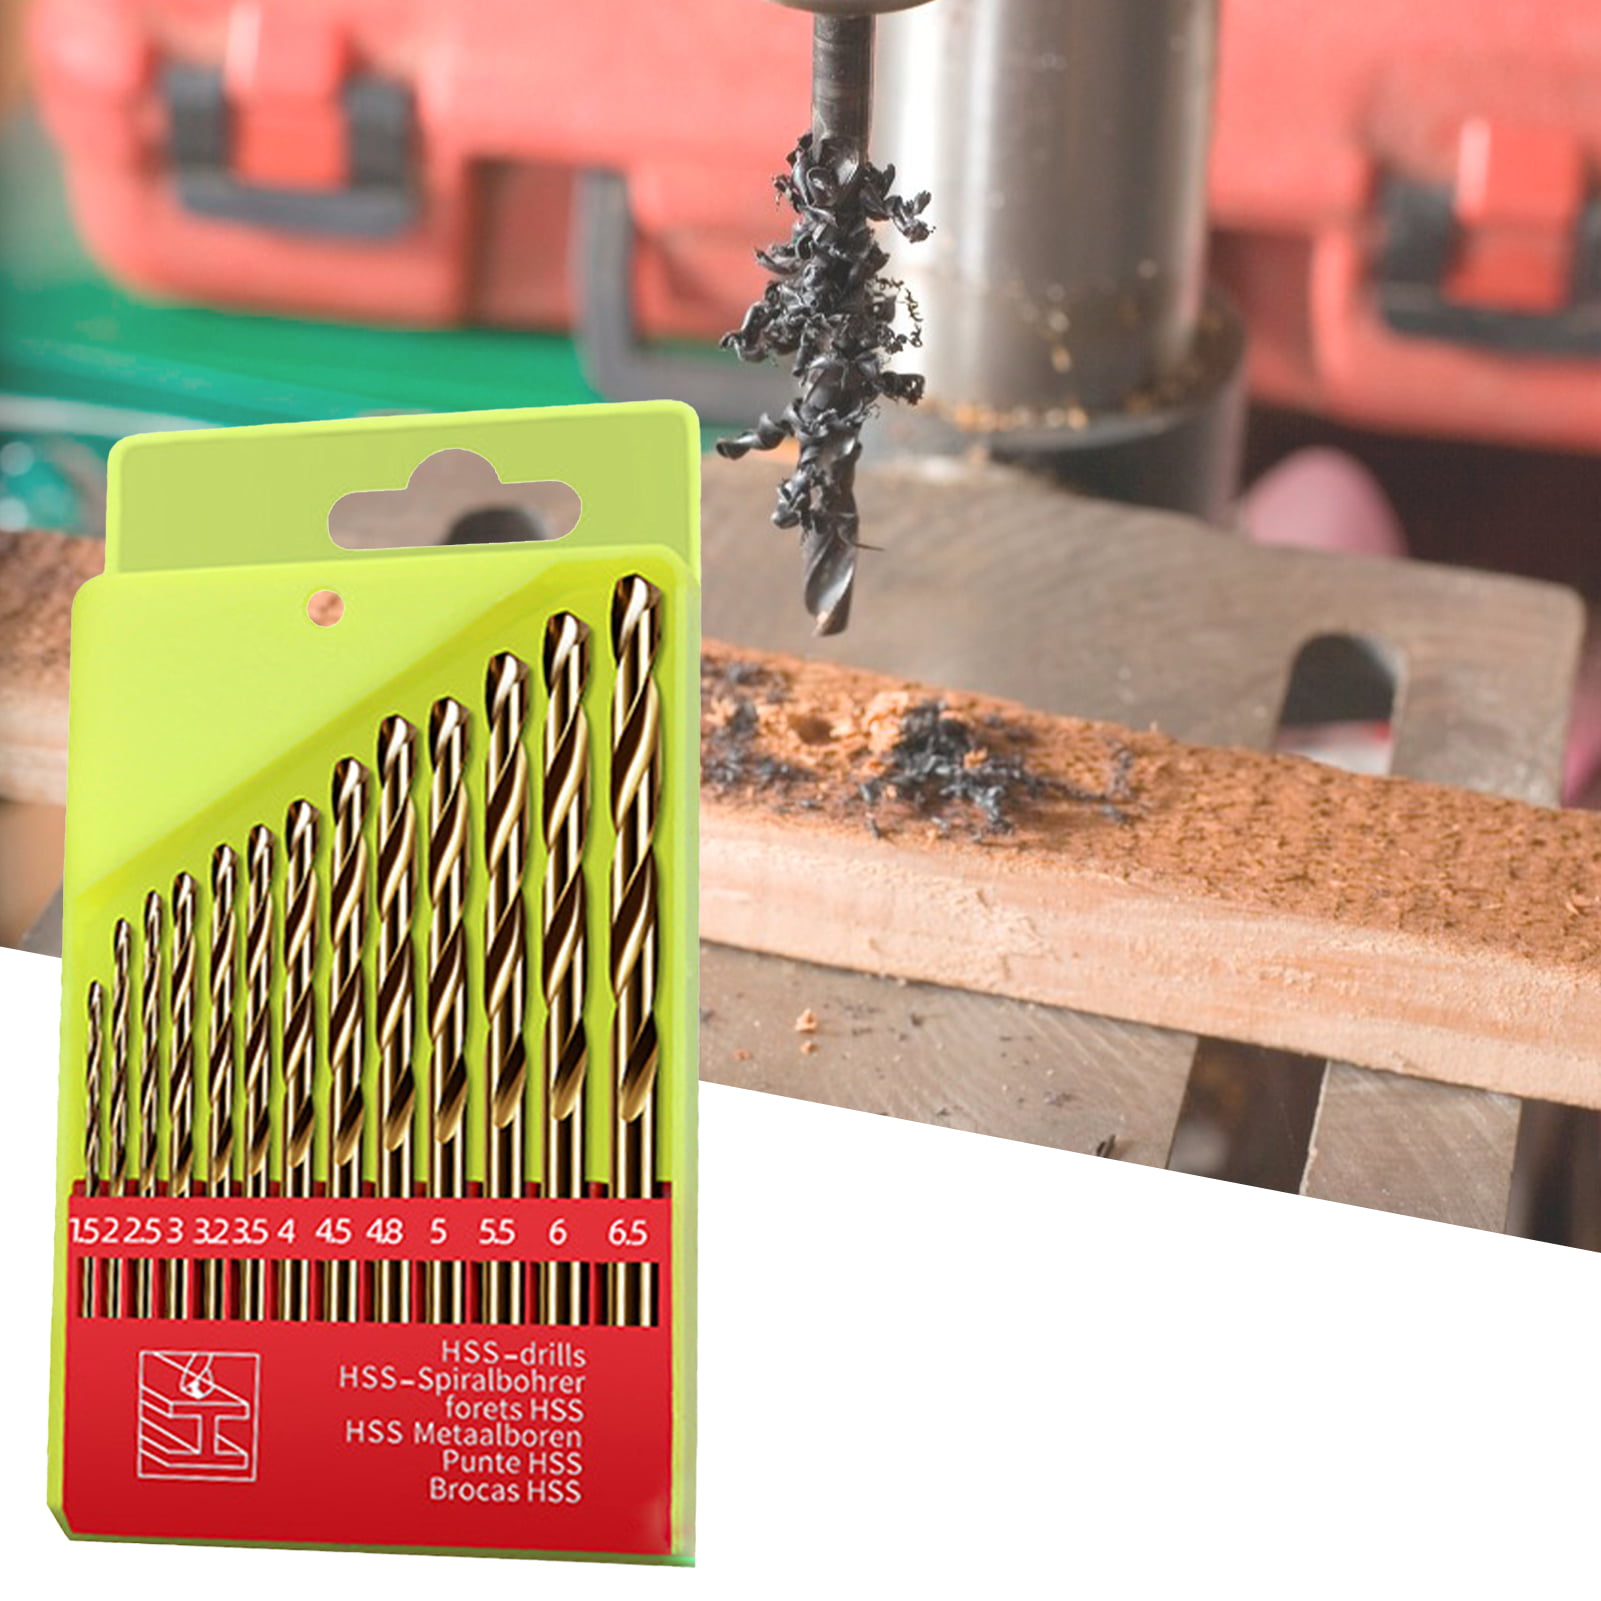 10x 1.1mm Mini Micro HSS Straight Shank Twist Drill Bit Electrical Drilling Tool 